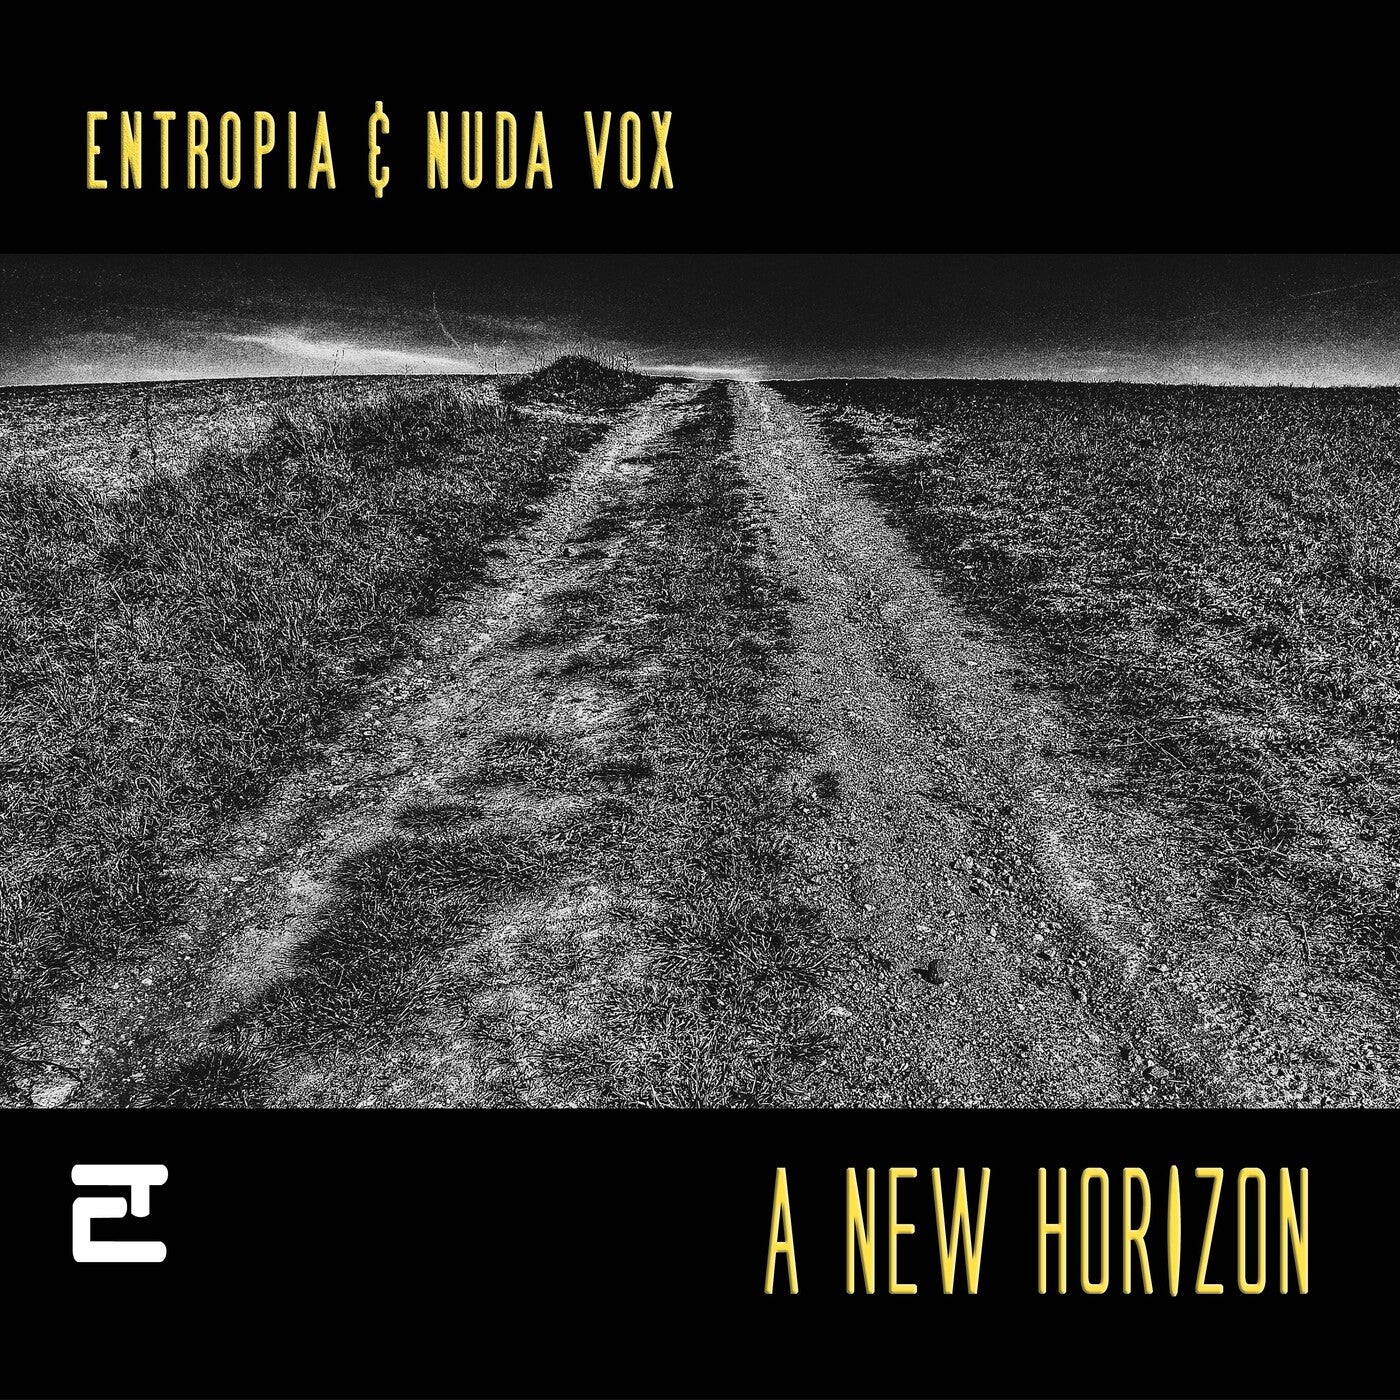 Entropia & Nuda Vox new e.p.